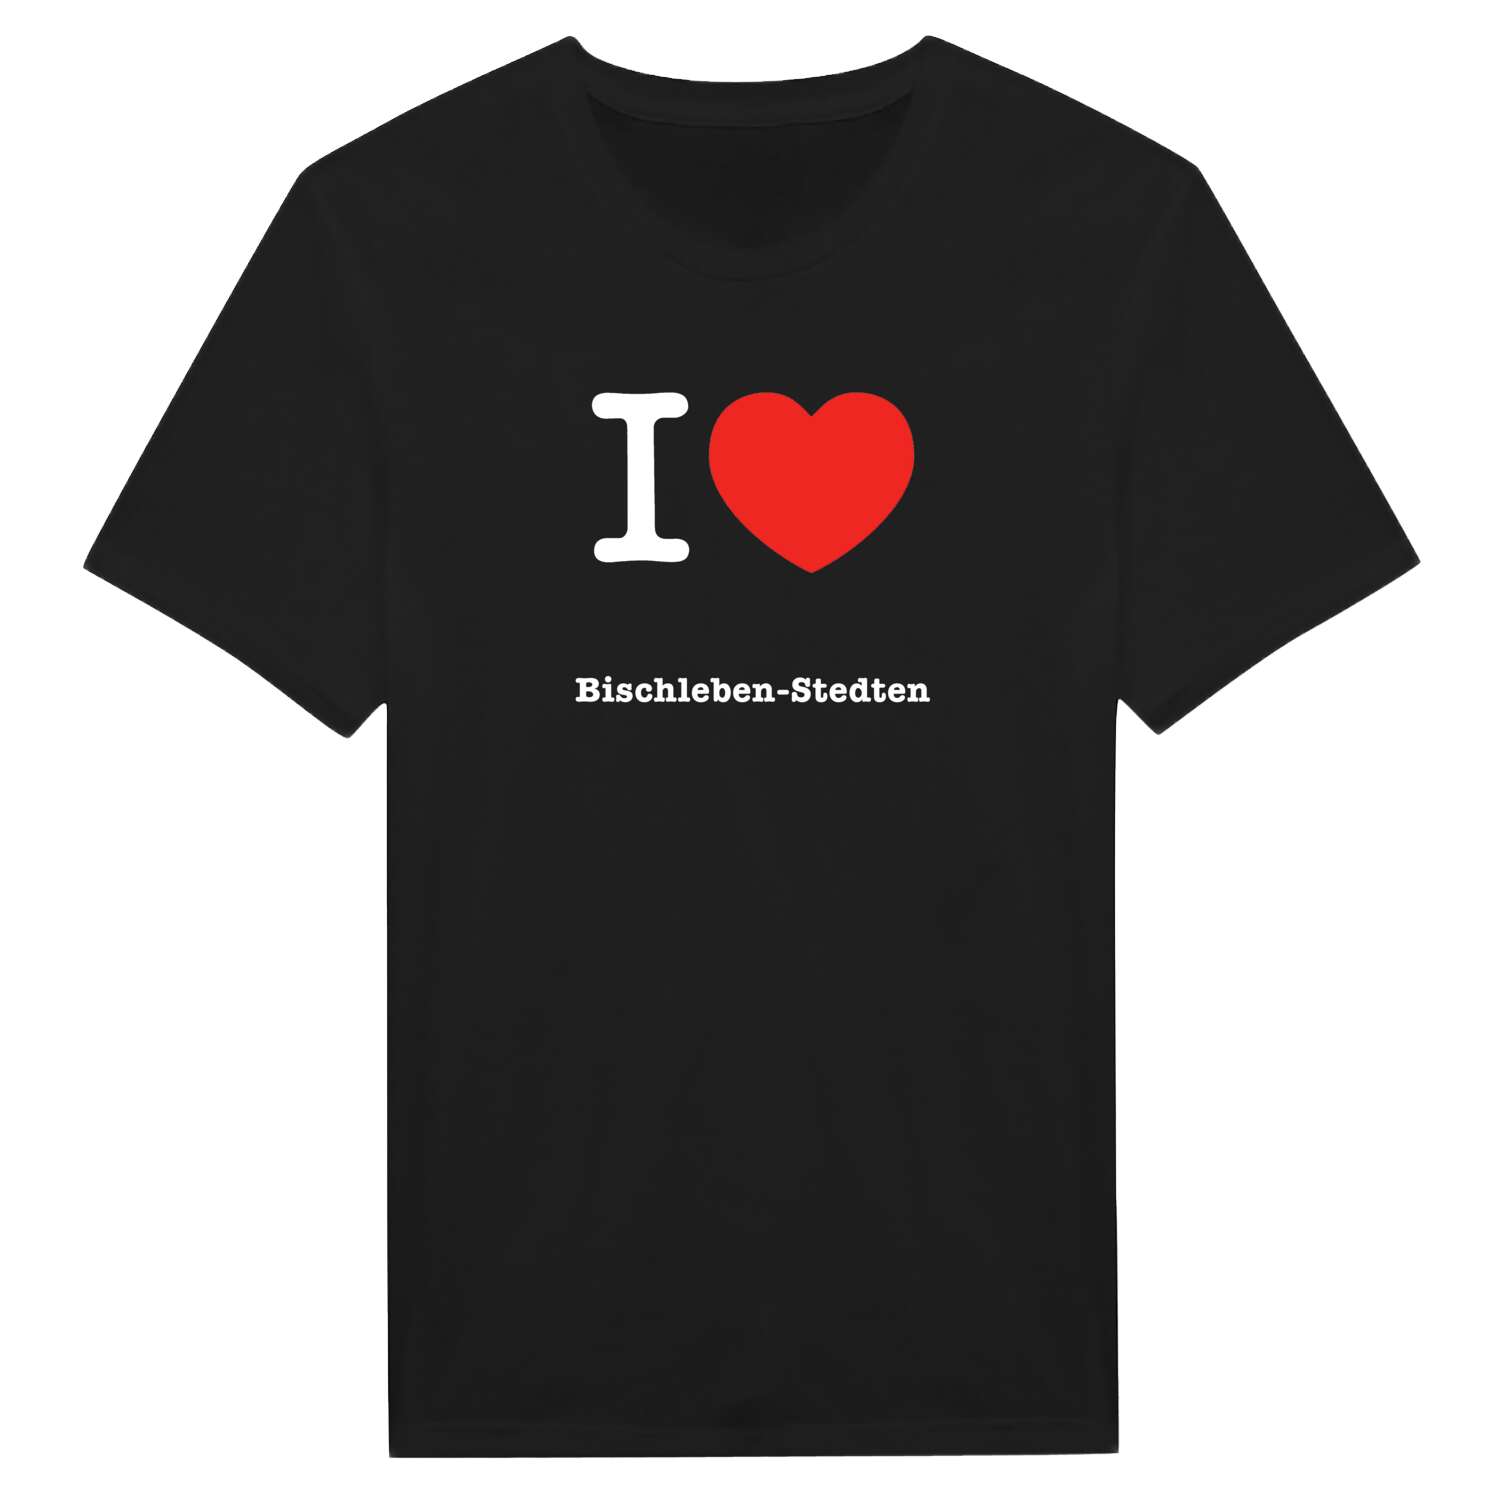 Bischleben-Stedten T-Shirt »I love«